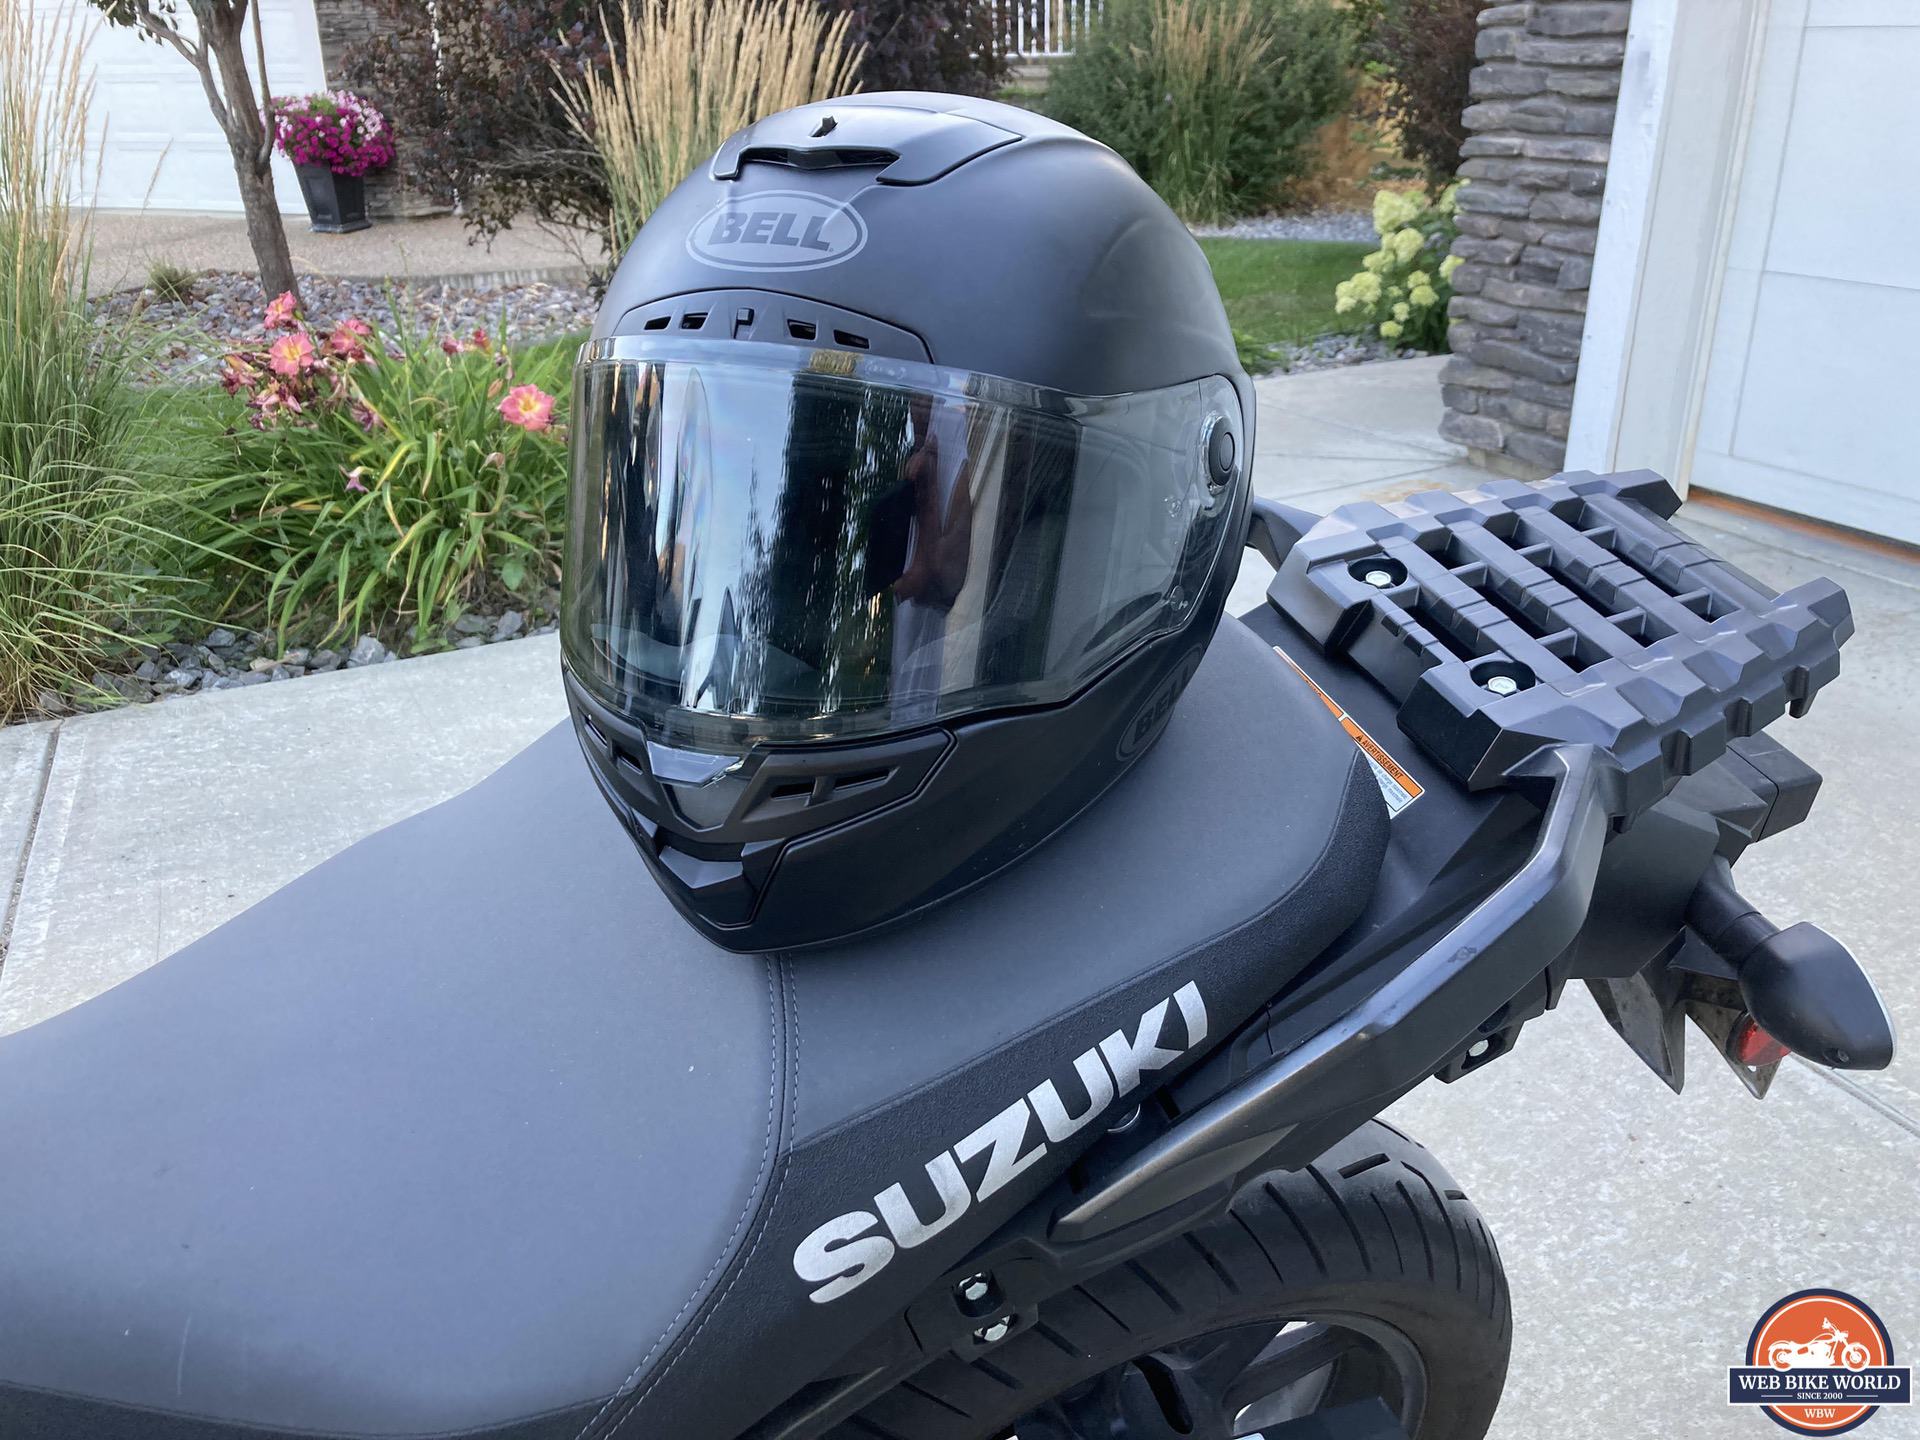 Viewport of Bell Star DLX MIPS helmet visible while helmet is resting on seat of Suzuki bike